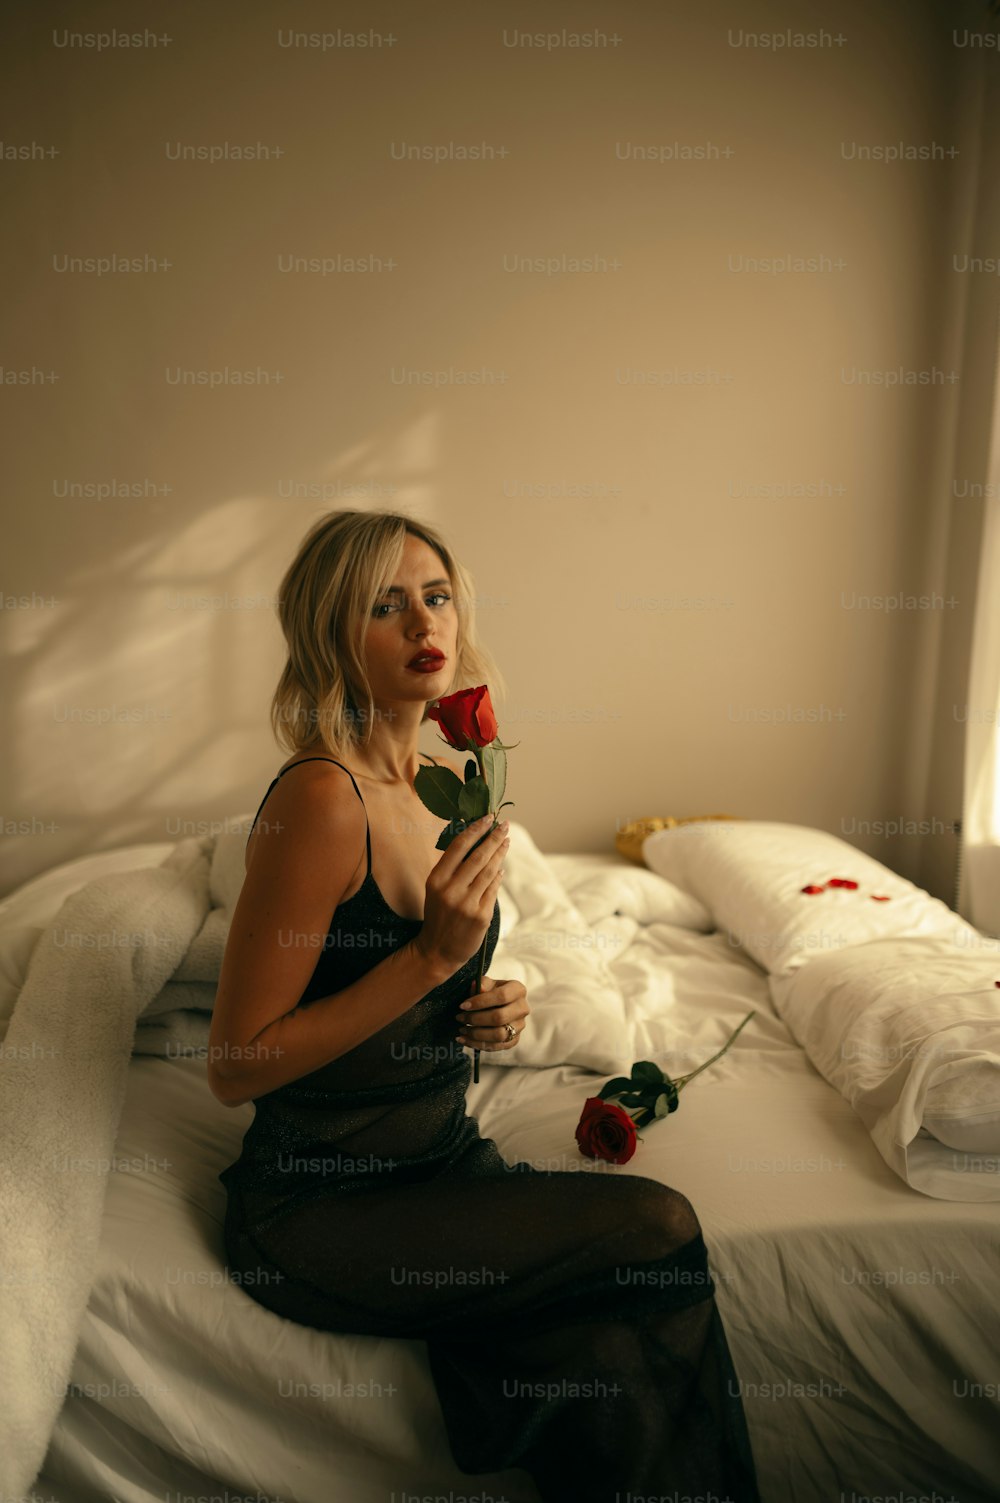 Eine Frau sitzt auf einem Bett und hält eine Rose in der Hand